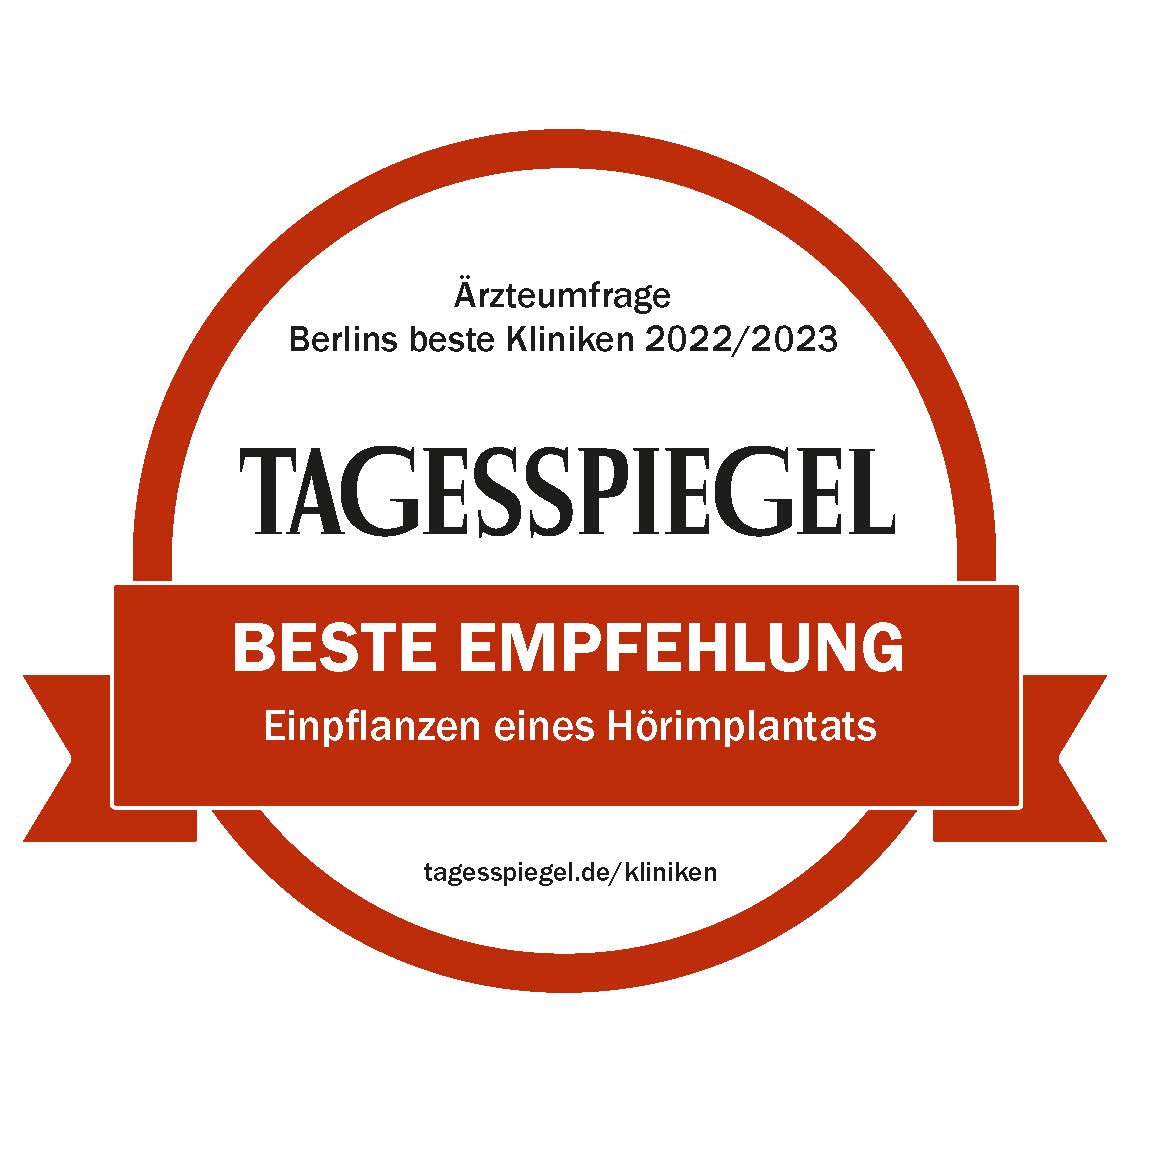 Tagesspiegel: Berlins beste Kliniken: Einpflanzen eines Hörimplantats